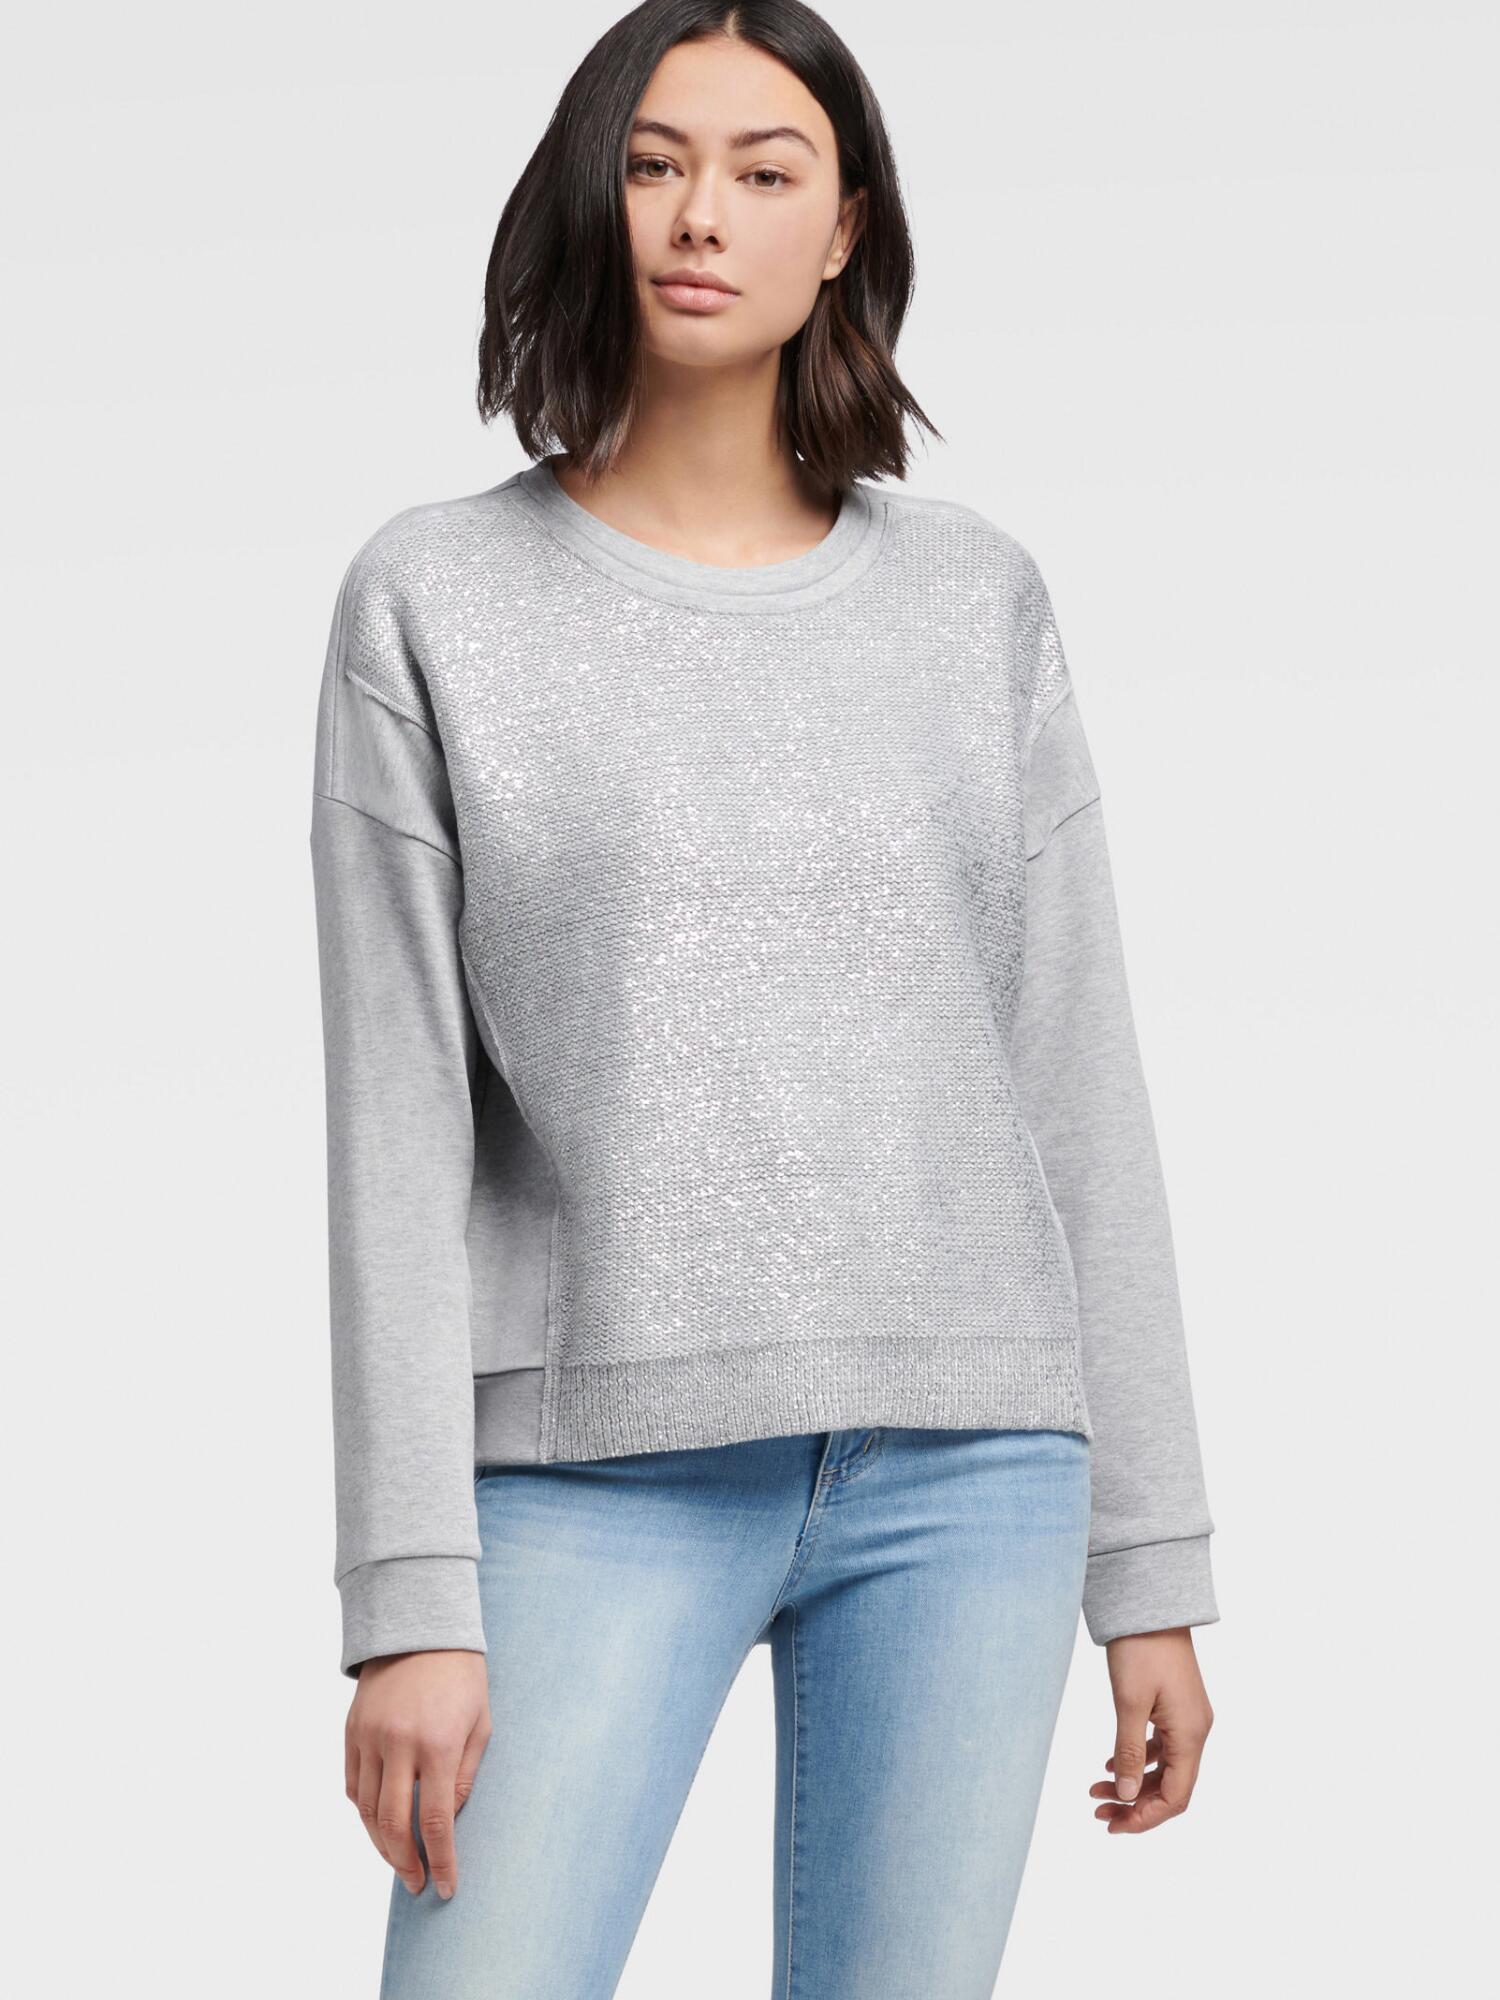 DKNY Shiny Sweatershirt in Grey/Silver (Gray) - Lyst